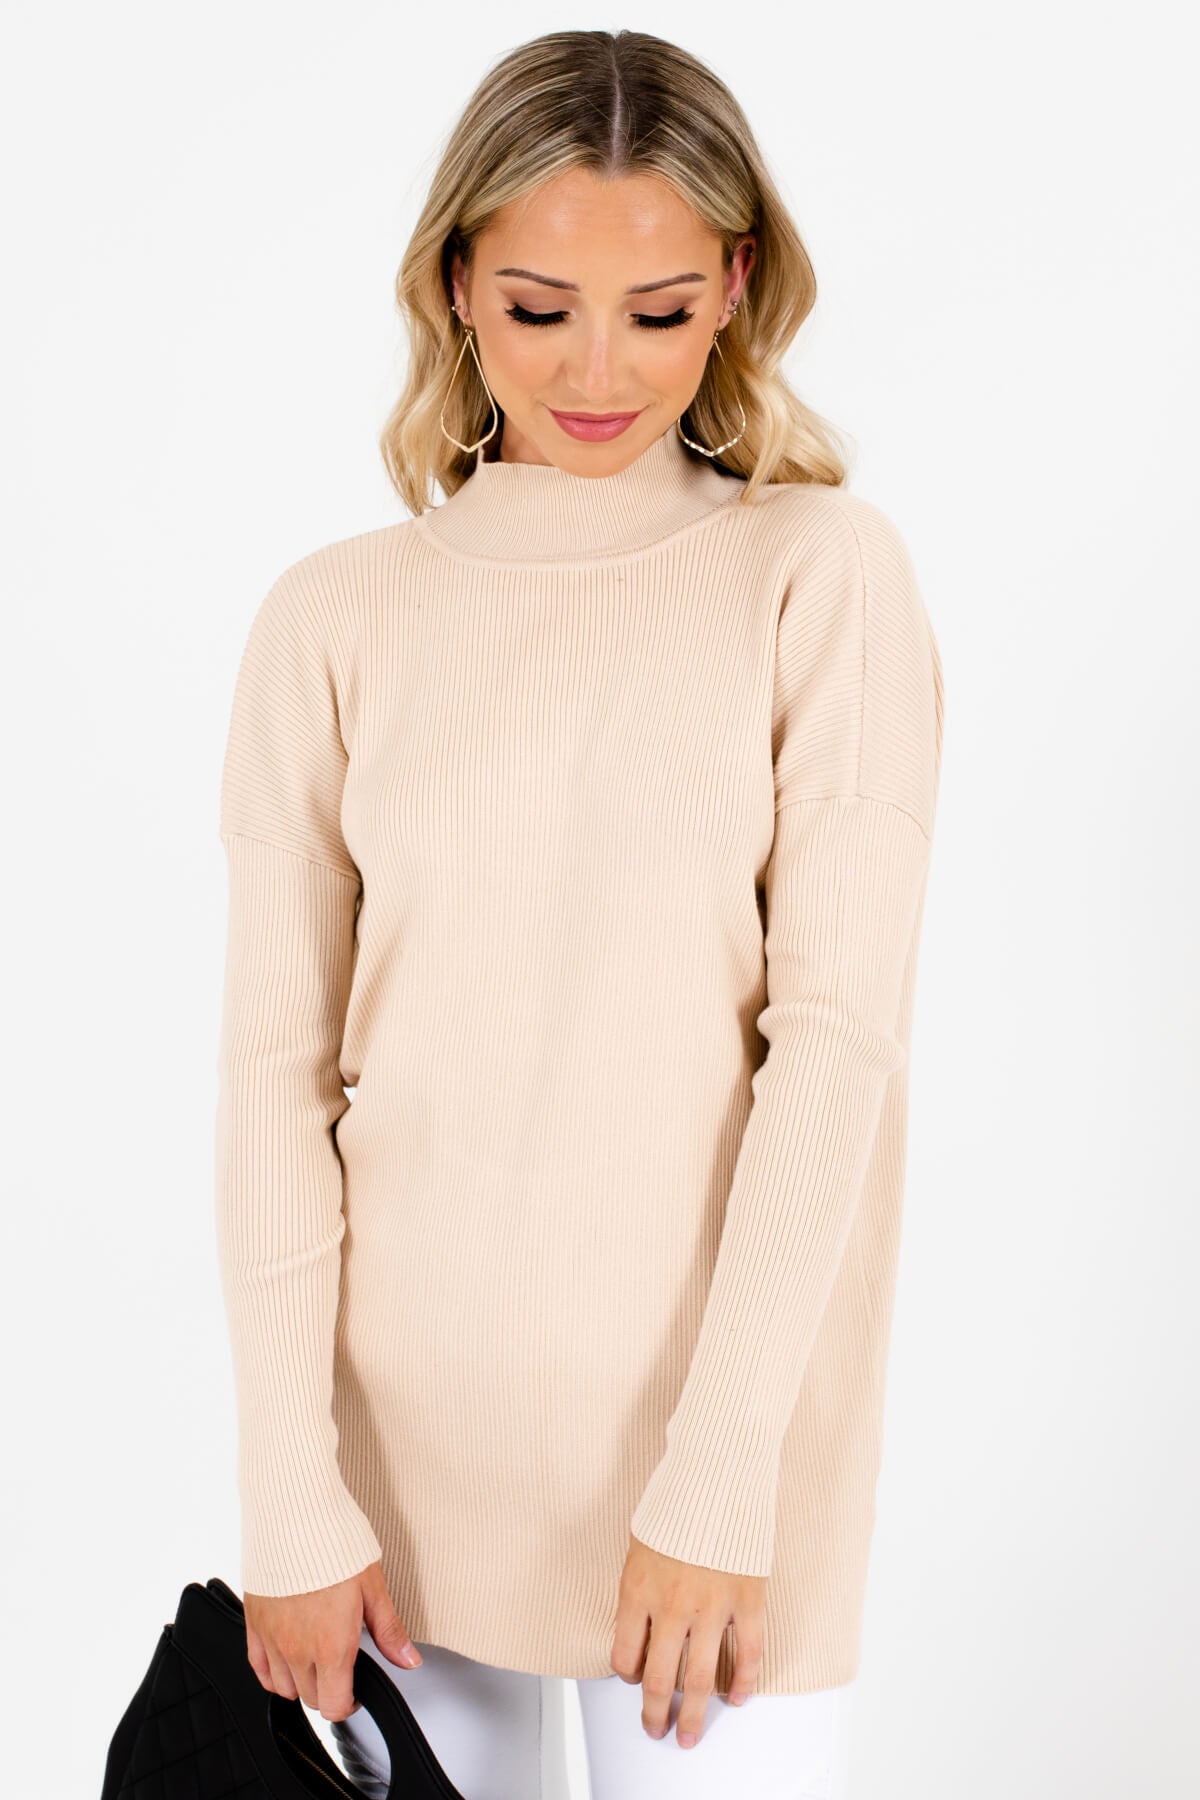 Women’s Beige Long Sleeve Boutique Sweater